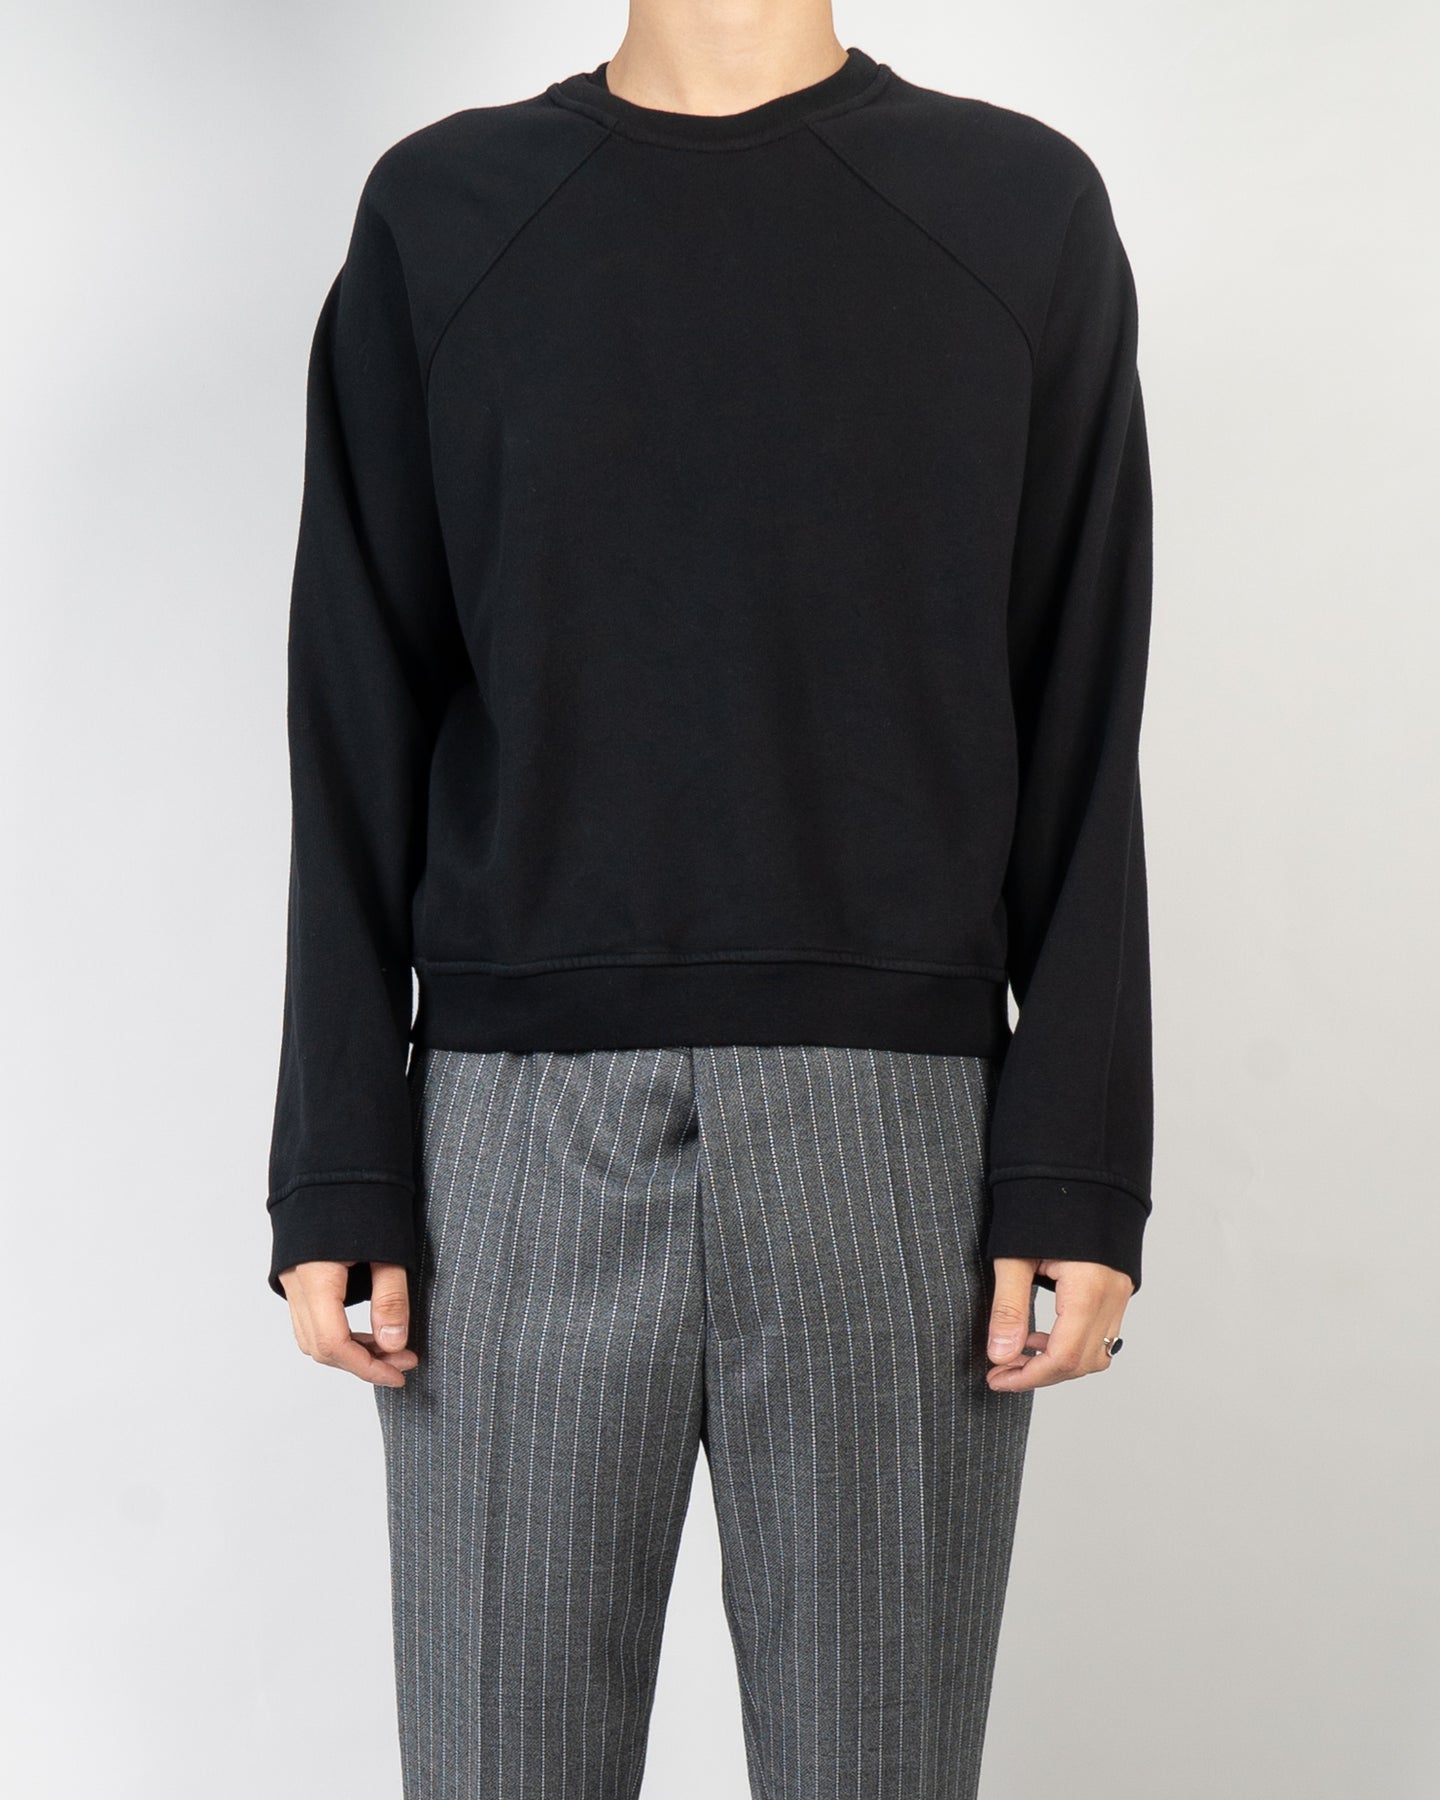 SS20 Black Cropped Raglan Perth Sweatshirt